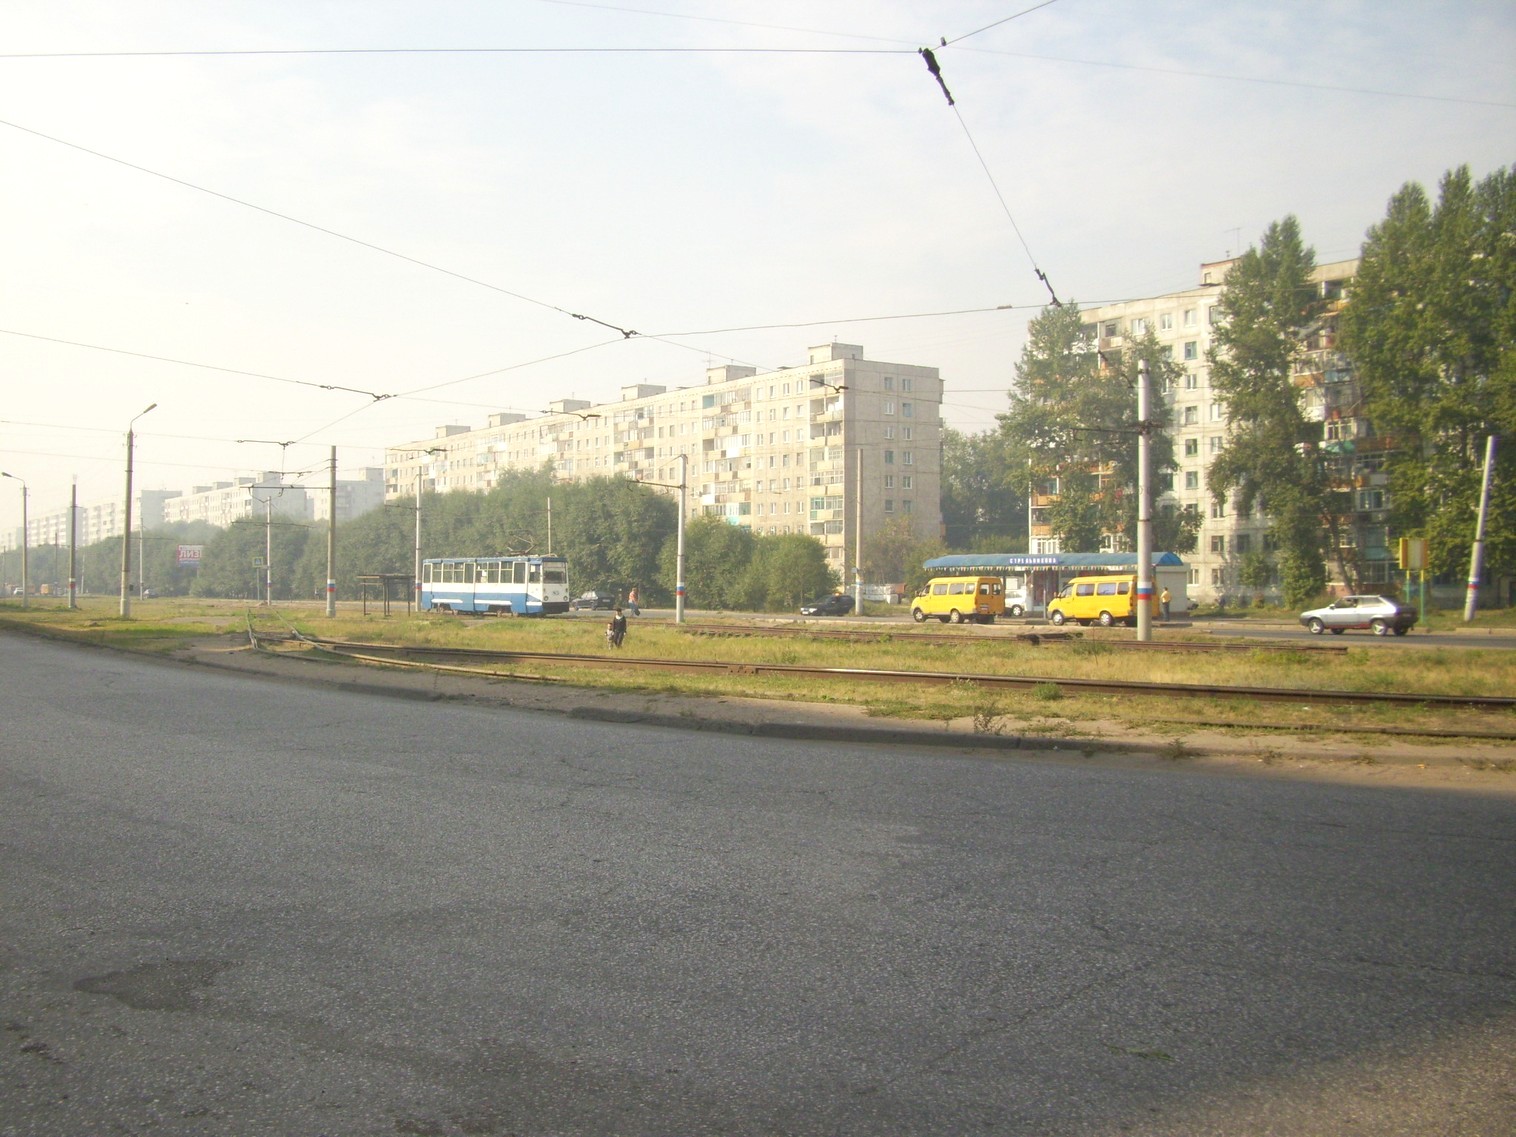 Омский трамвай  —  фотографии, сделанные в 2010 году (часть 3)